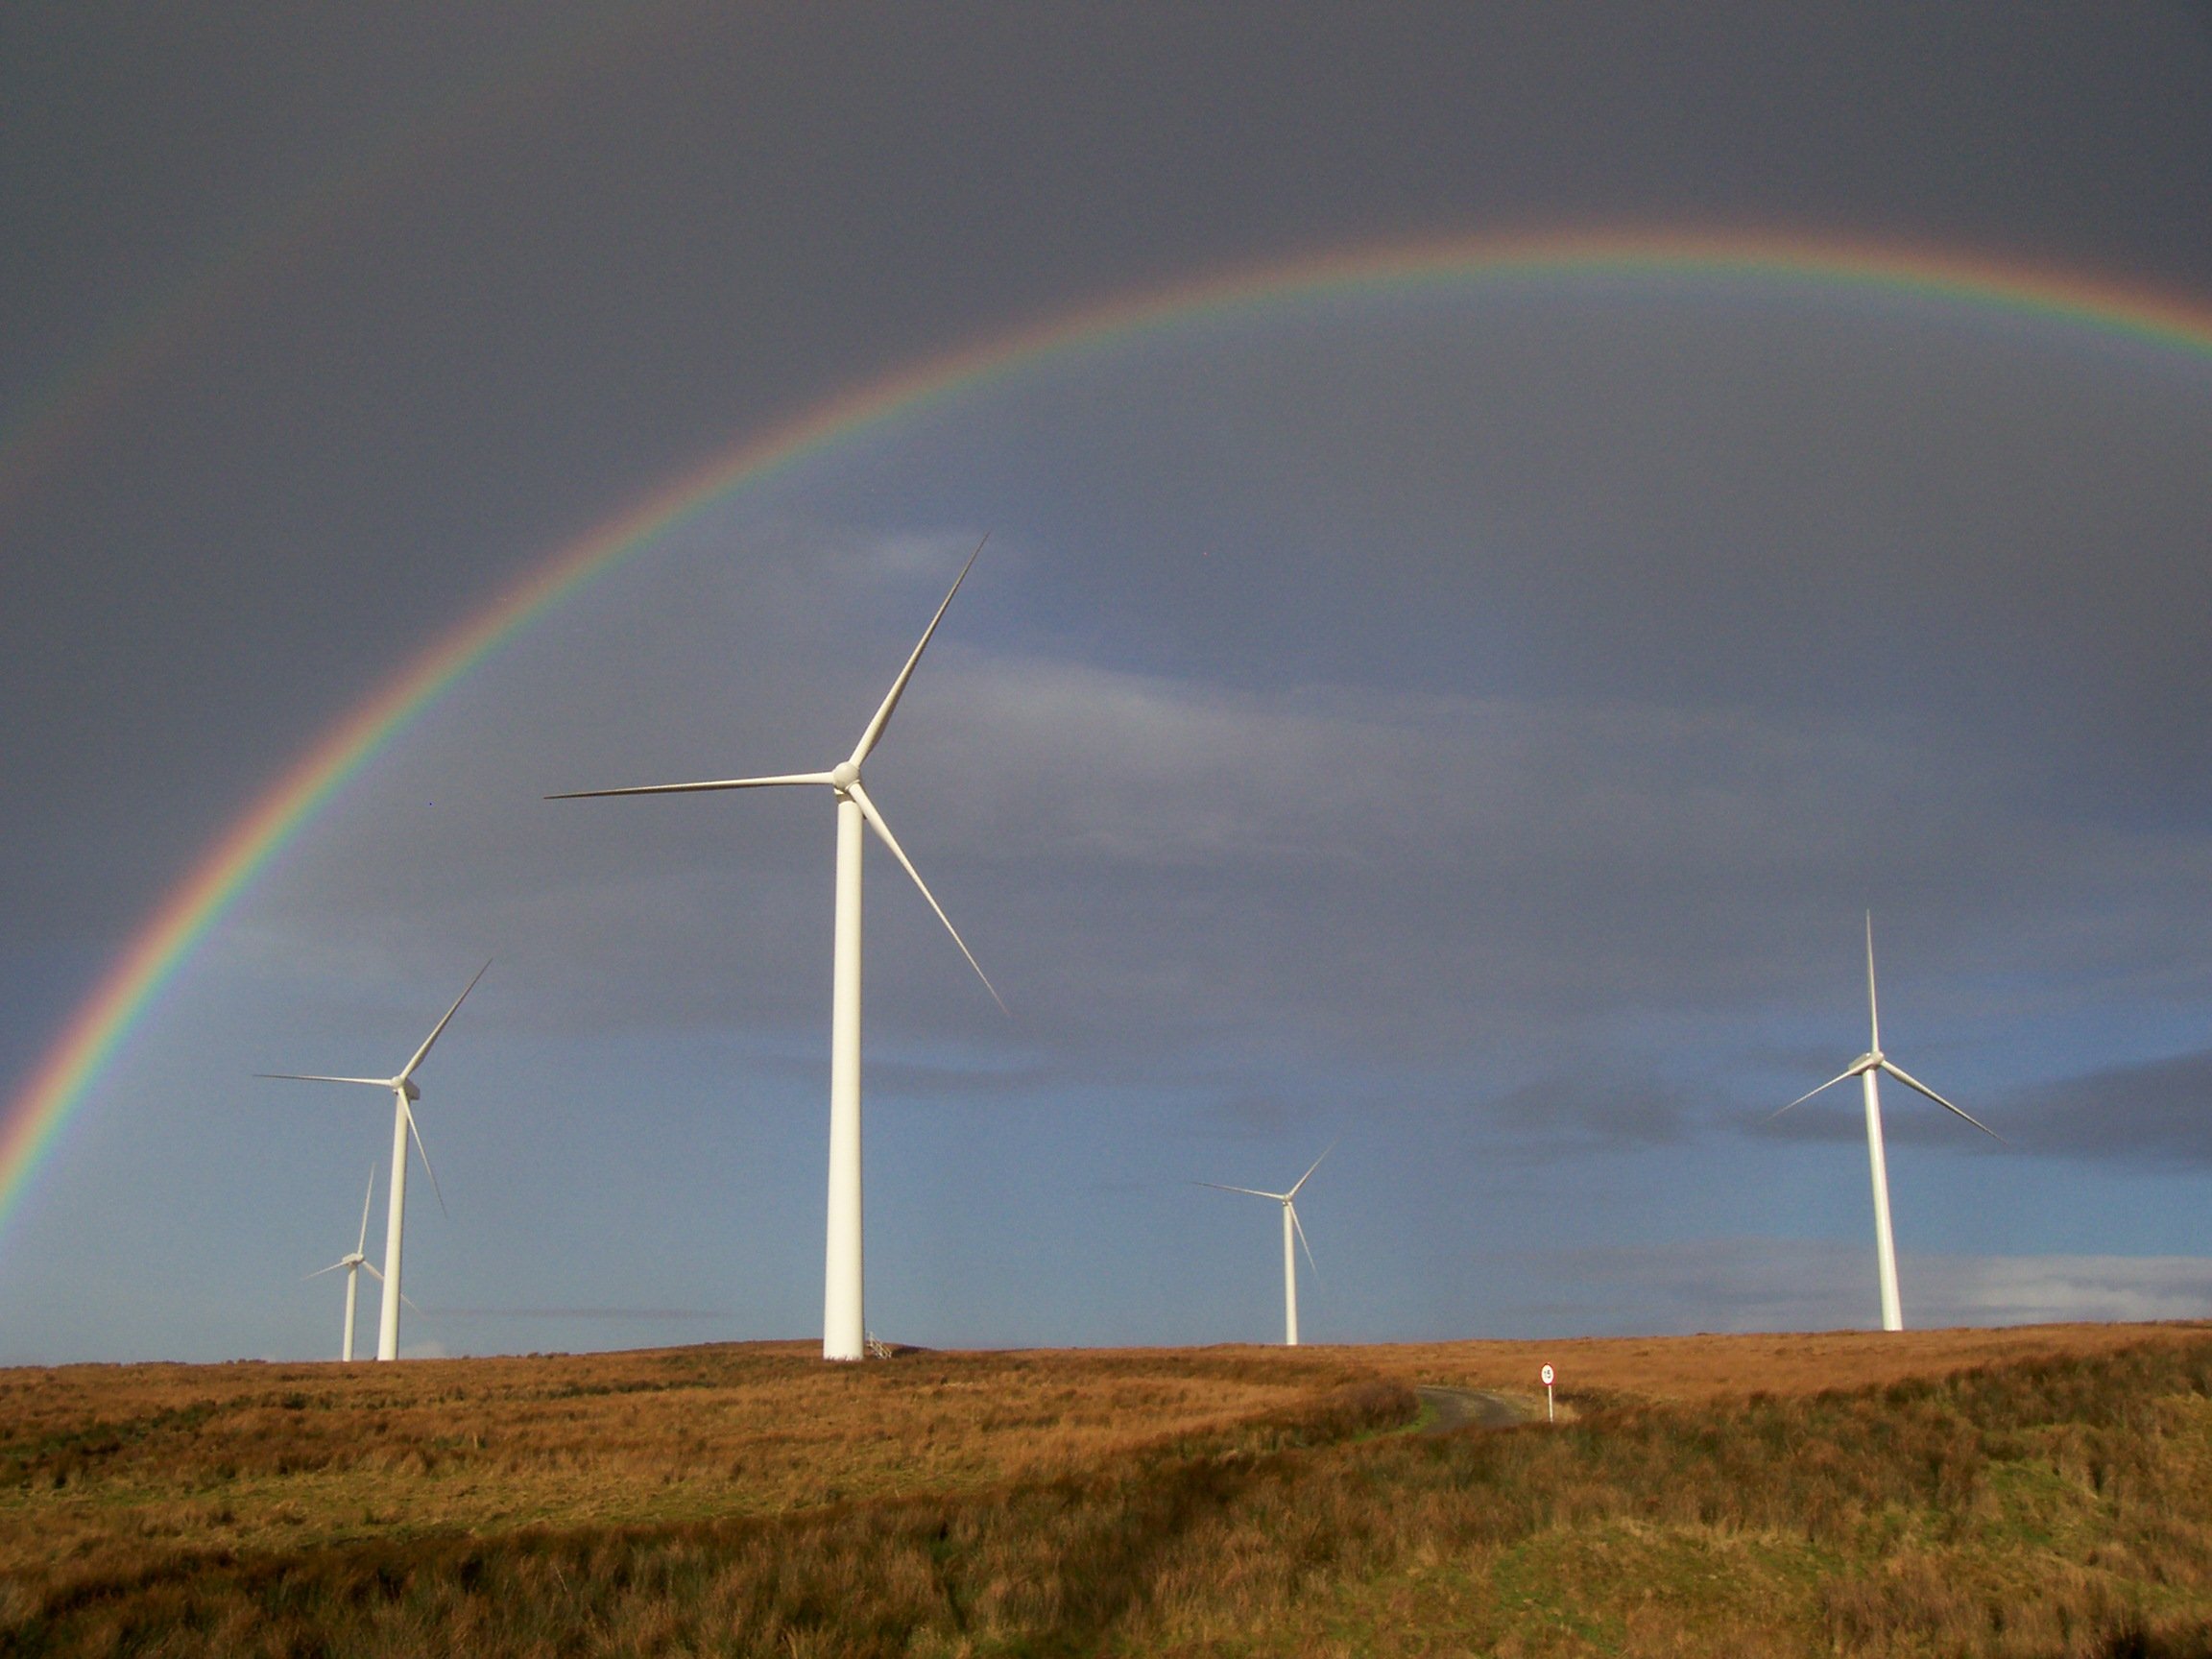 A rainbow over wind turbines.